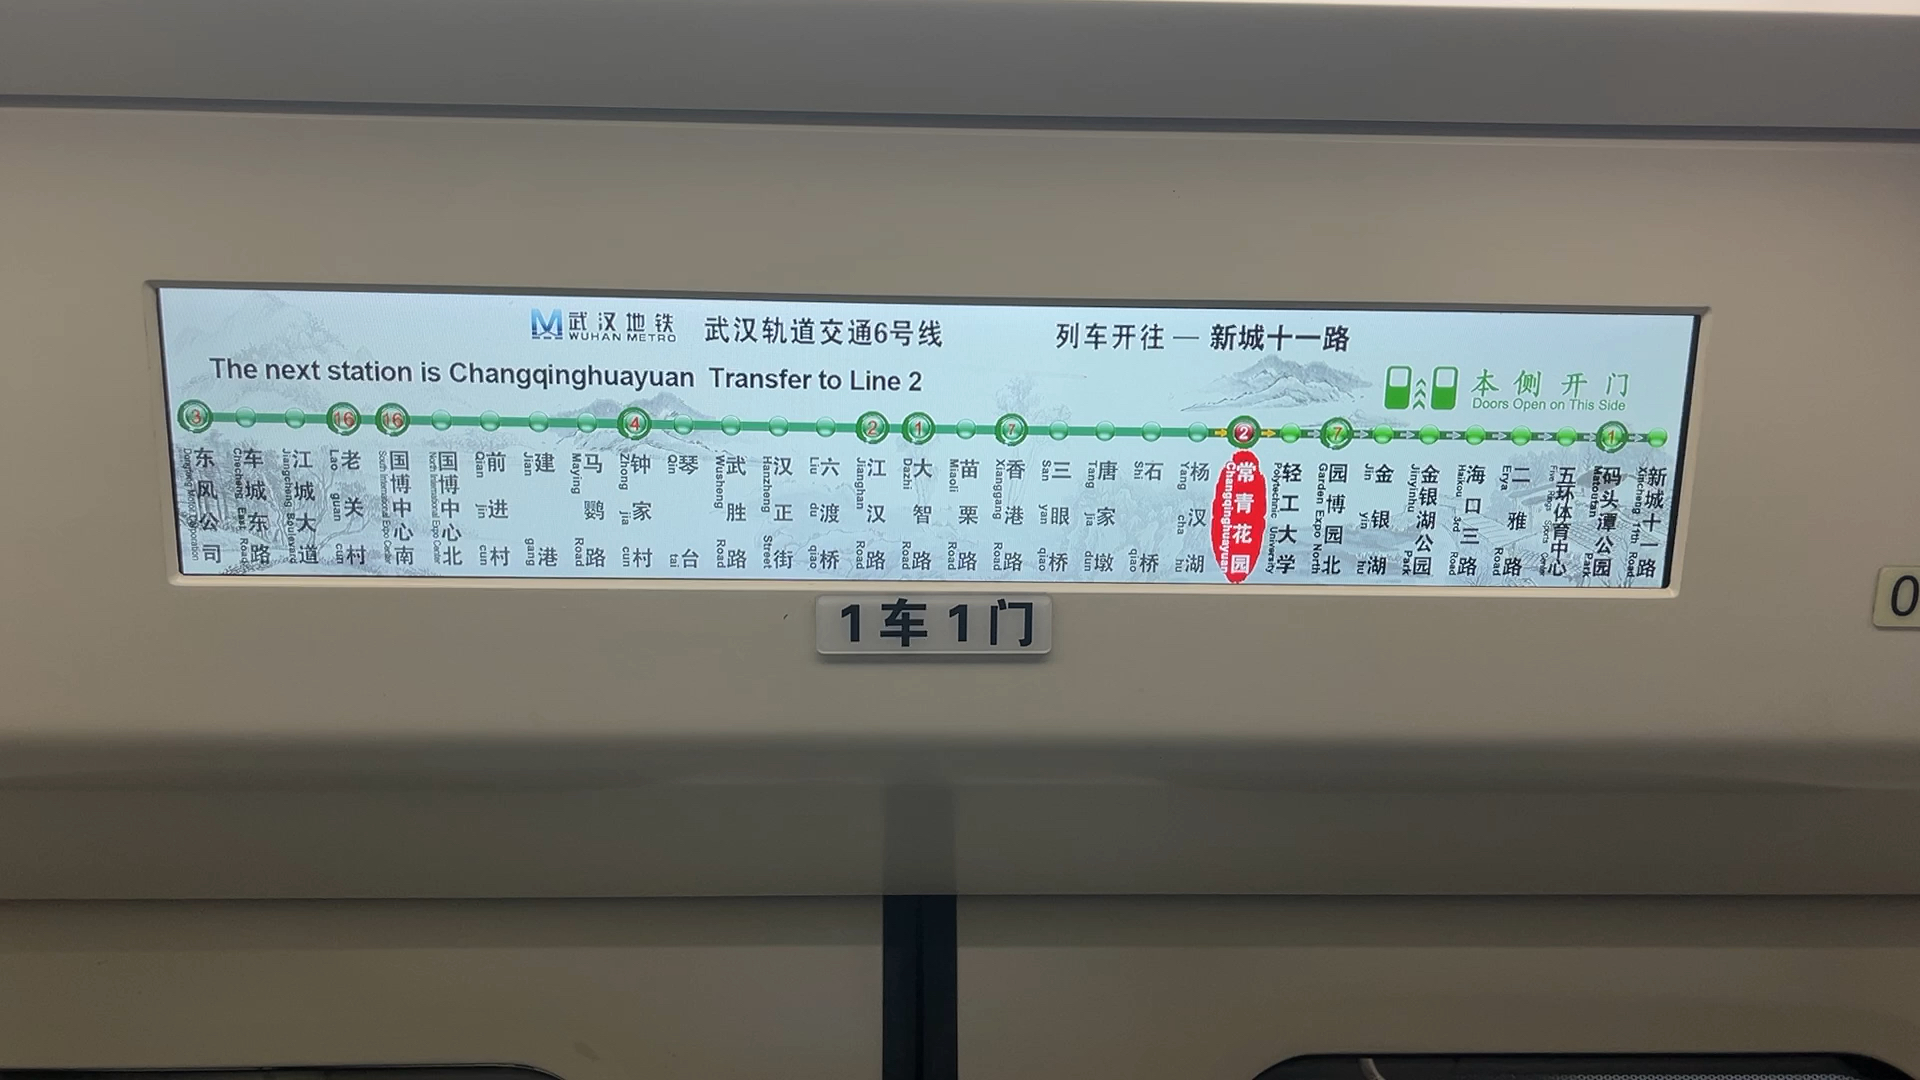 惊天!武汉地铁整改报站首次出现需要帮助的乘客让个座英文